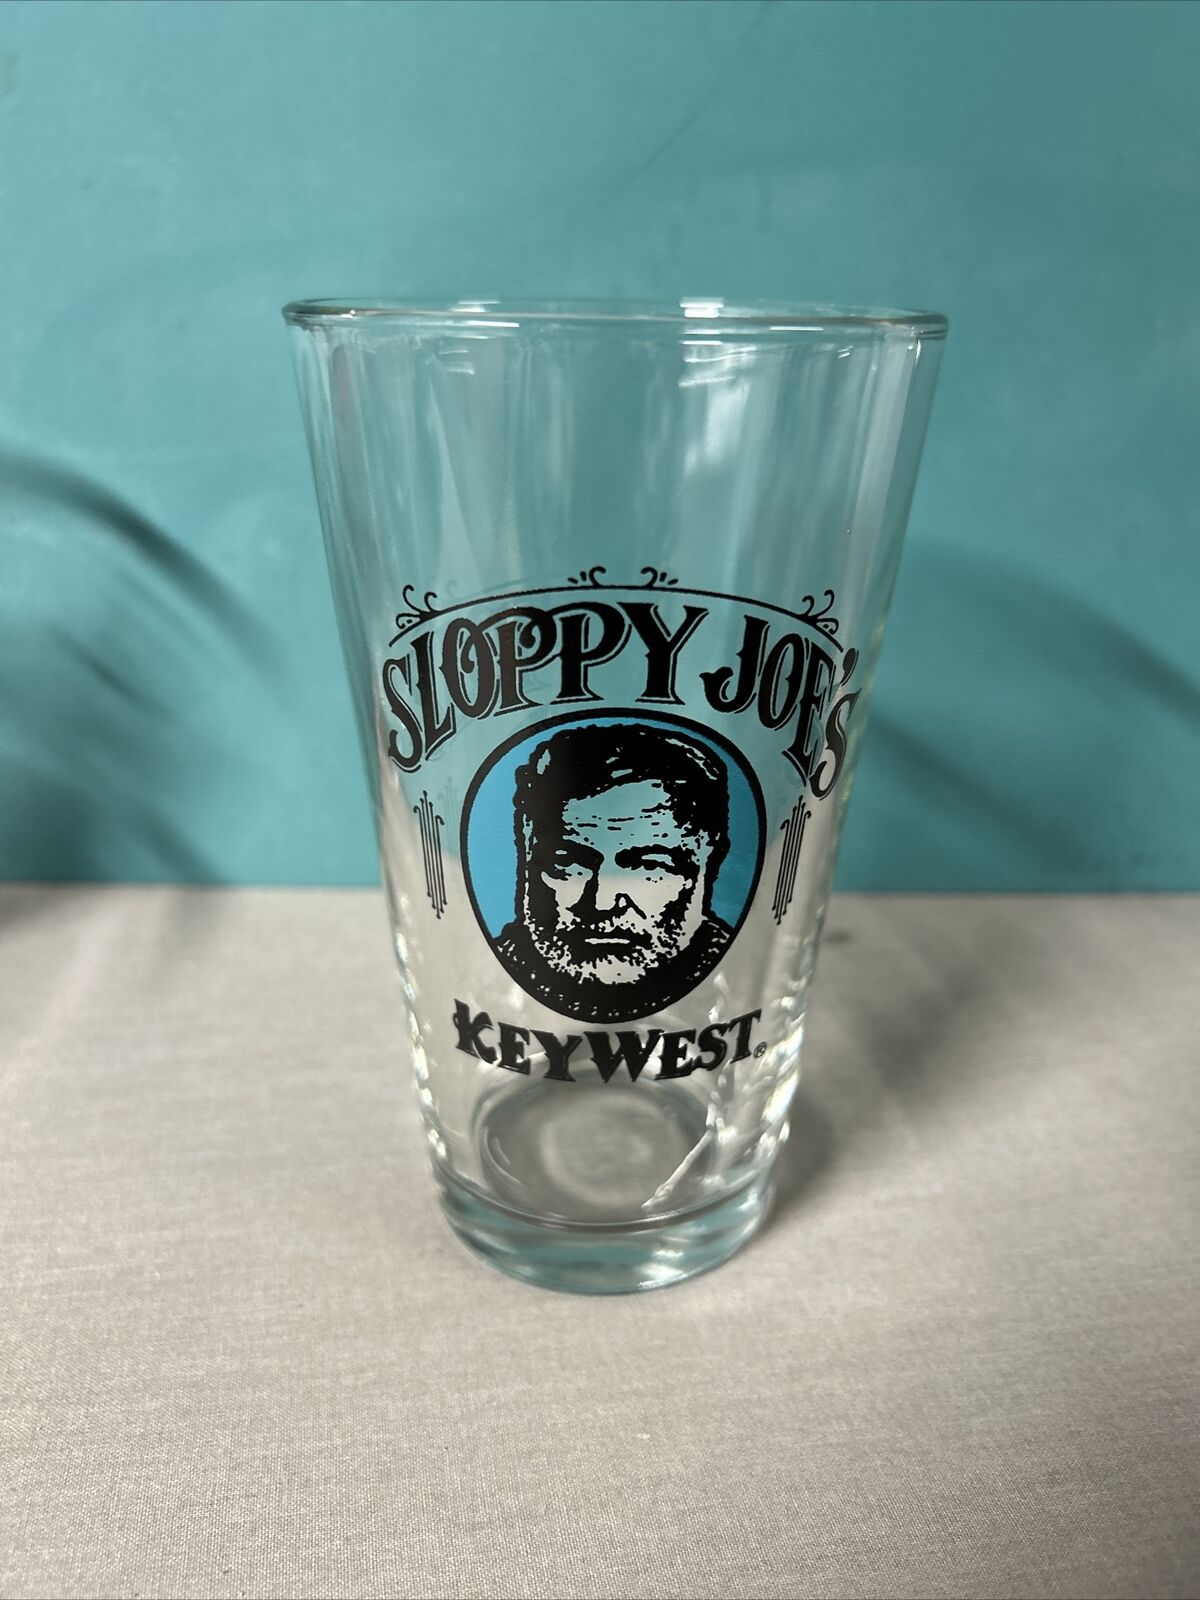 Sloppy Joe’s Key West Pint Beer Glass Hemingway